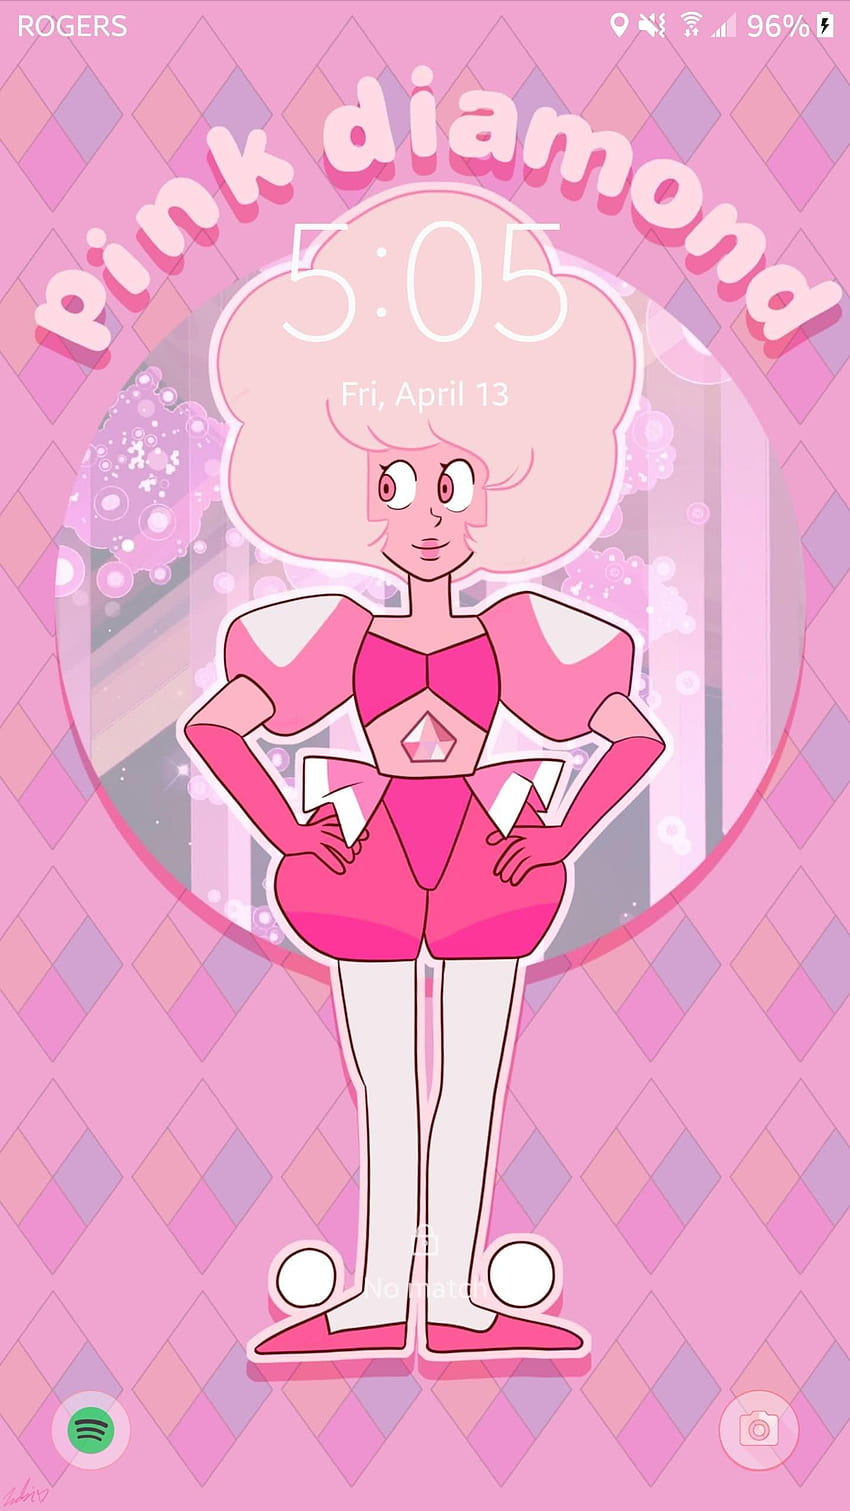 Hình nền điện thoại Steven Universe hồng kim cương sẽ khiến chiếc điện thoại của bạn trở nên đẹp đẽ hơn bao giờ hết. Với những vẻ đẹp ấn tượng của Rose Quartz và Steven Universe, bạn sẽ được truyền cảm hứng và niềm vui mỗi khi sử dụng điện thoại của mình.